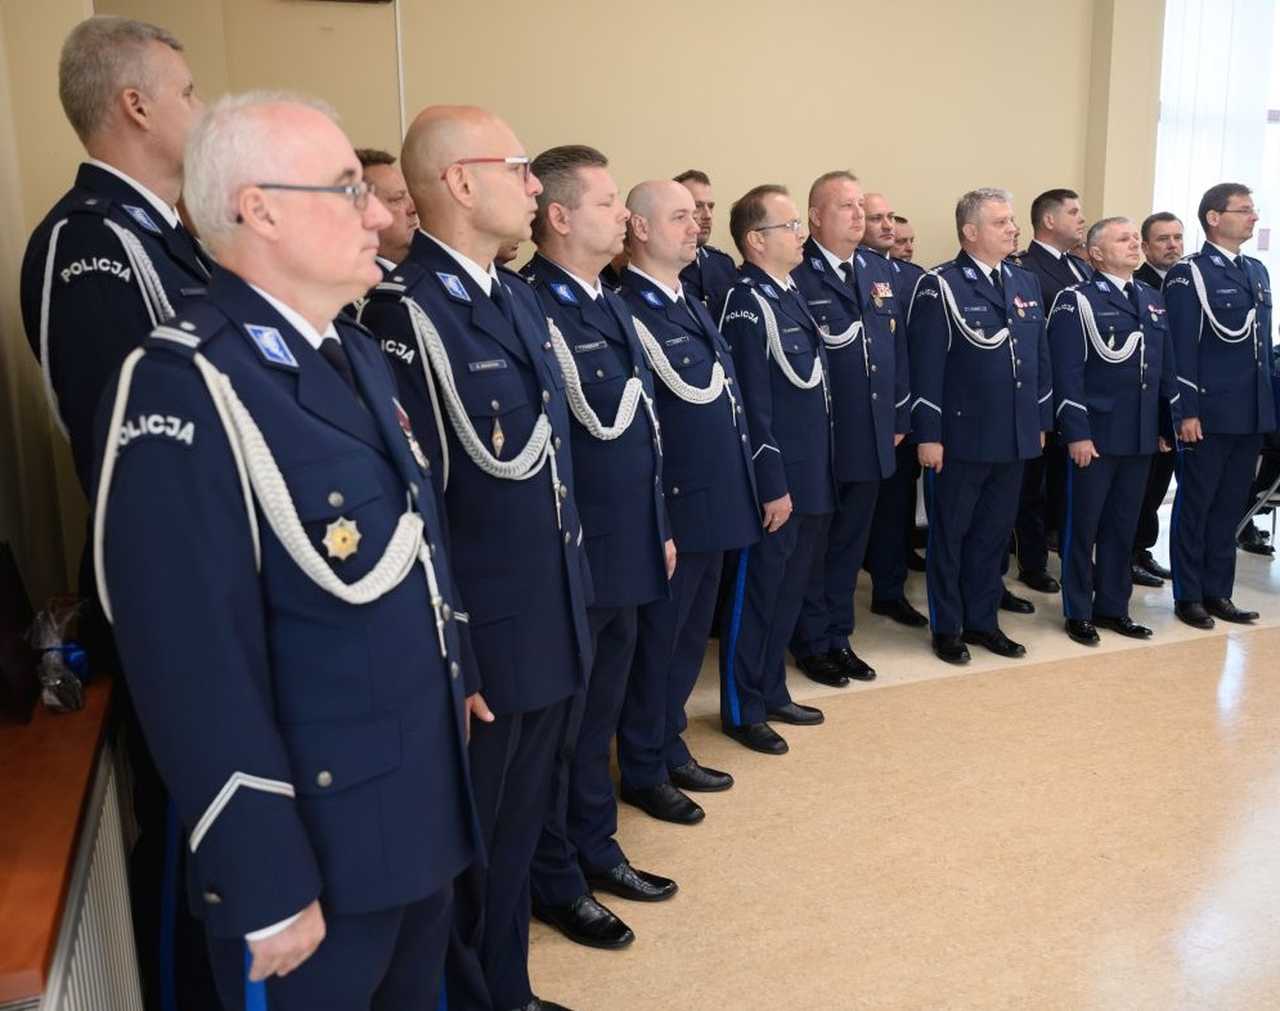 [FOTO] Świdnickie obchody Święta Policji w 104 rocznicę powołania Policji Państwowej